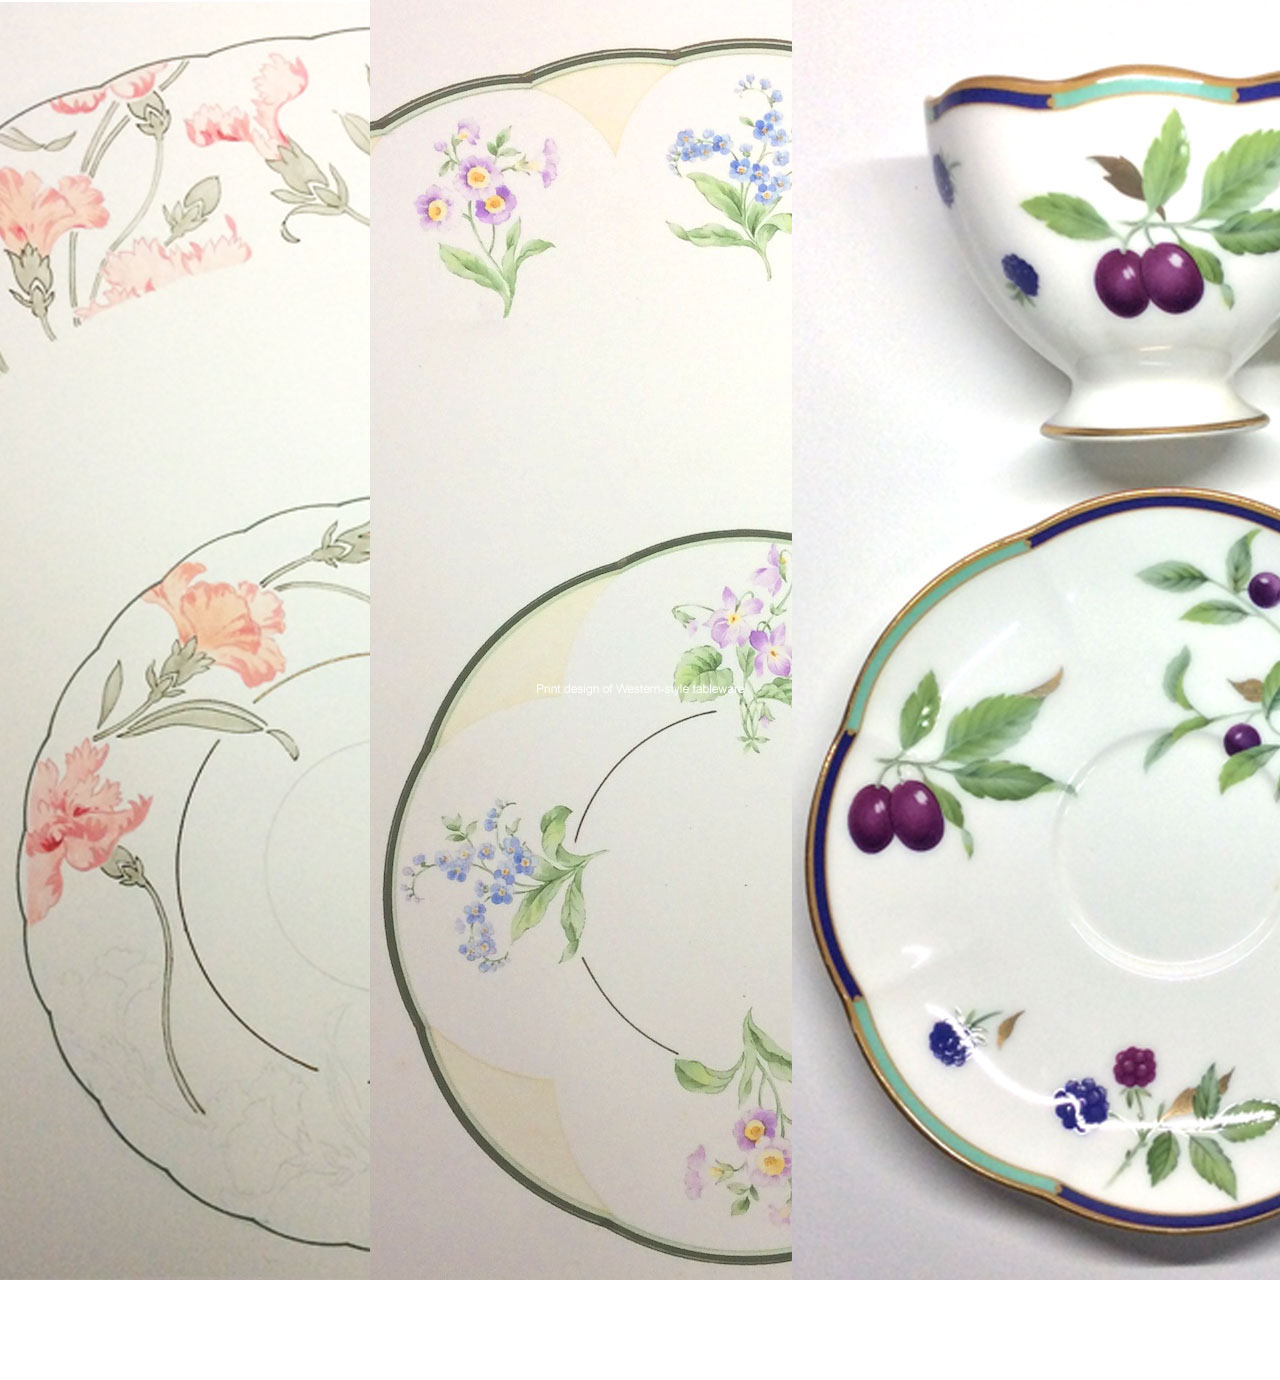 Des conception de motifs imprimés sur de la vaisselle occidentale.